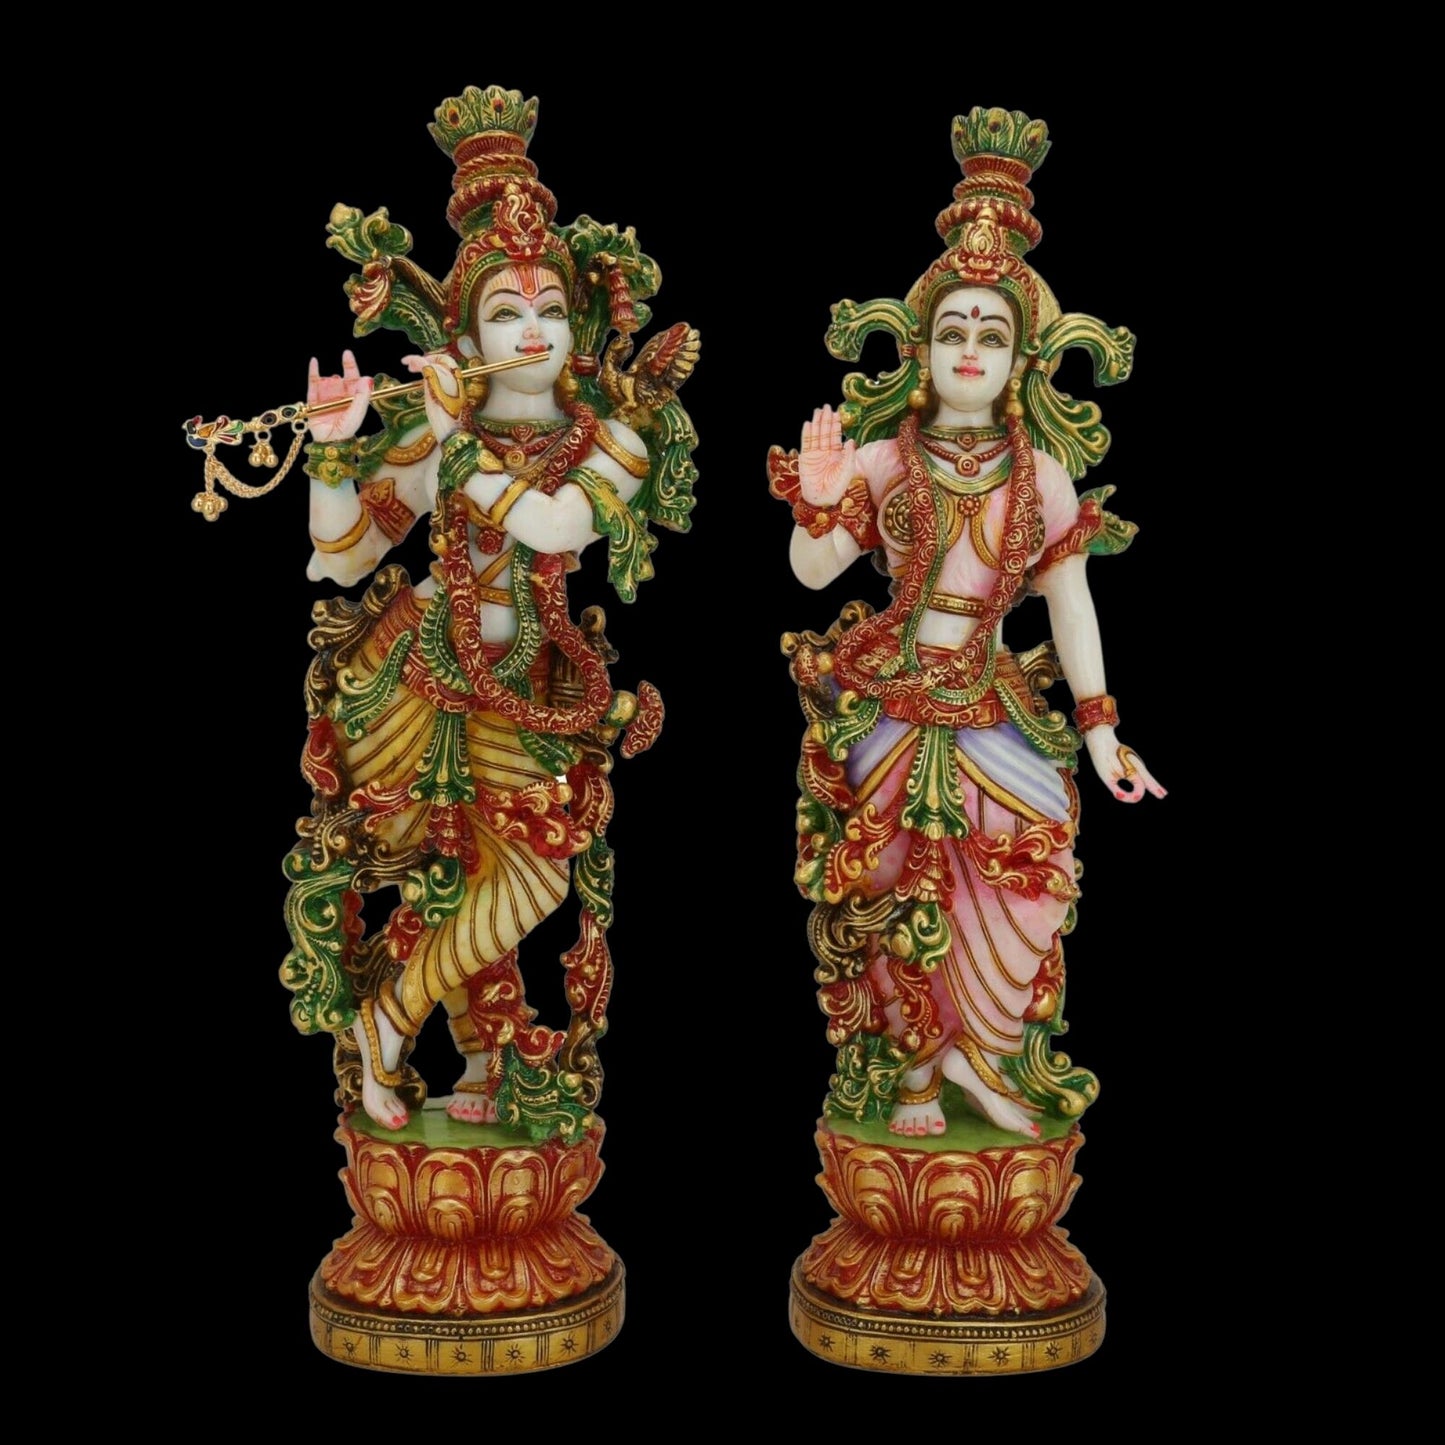 Estatua de Radha Krishna - Gran Radha Krishna Murti de mármol de 15 pulgadas - Ídolo de pareja divina - Figura multicolor Radha Kanha Murti pintada a mano - Escultura especial de regalos de aniversario de inauguración de la casa